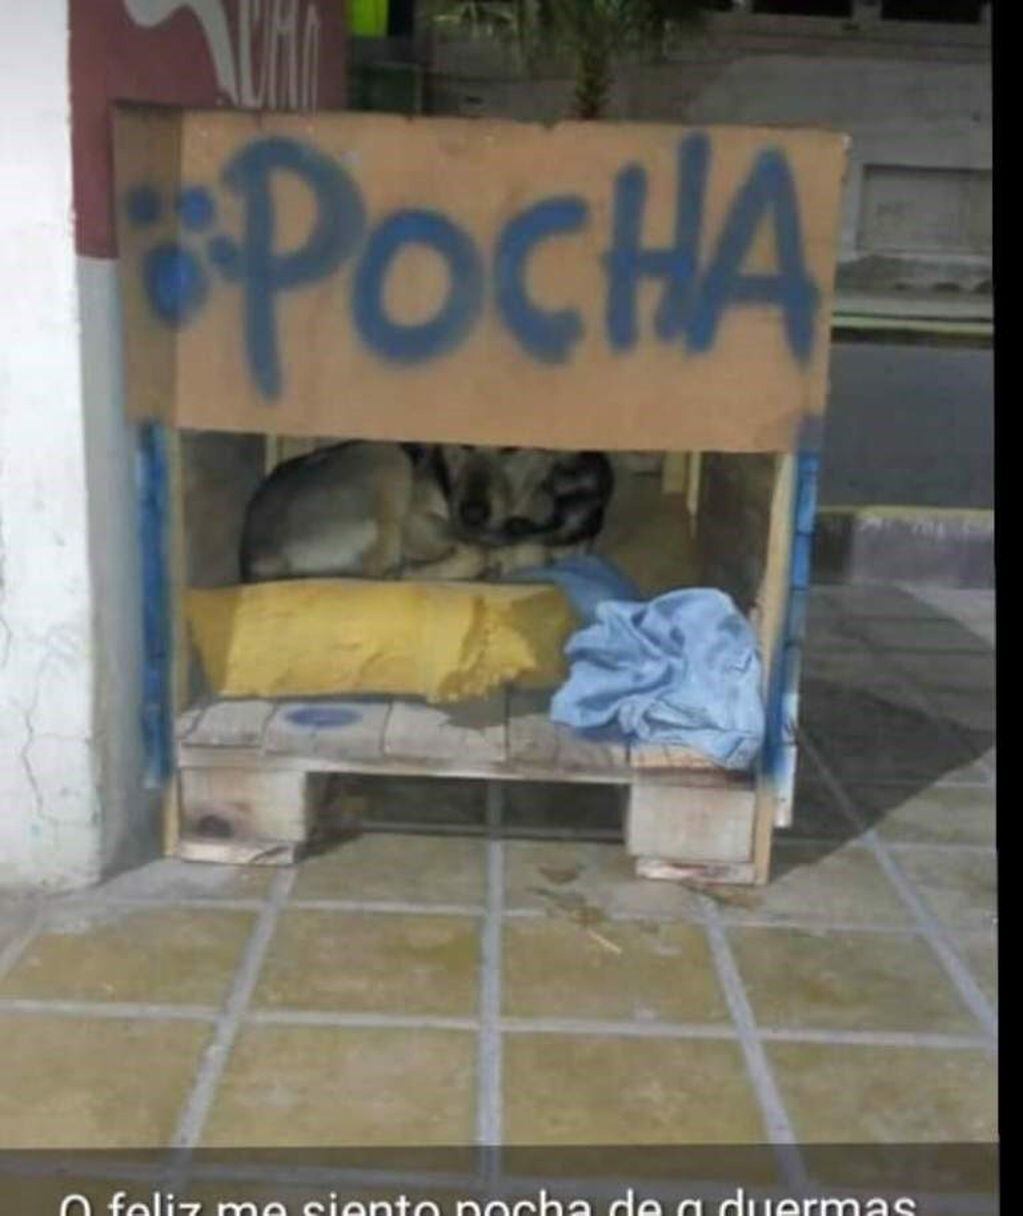 La primera en recibir su casita fue Pocha, una perrita callejera.